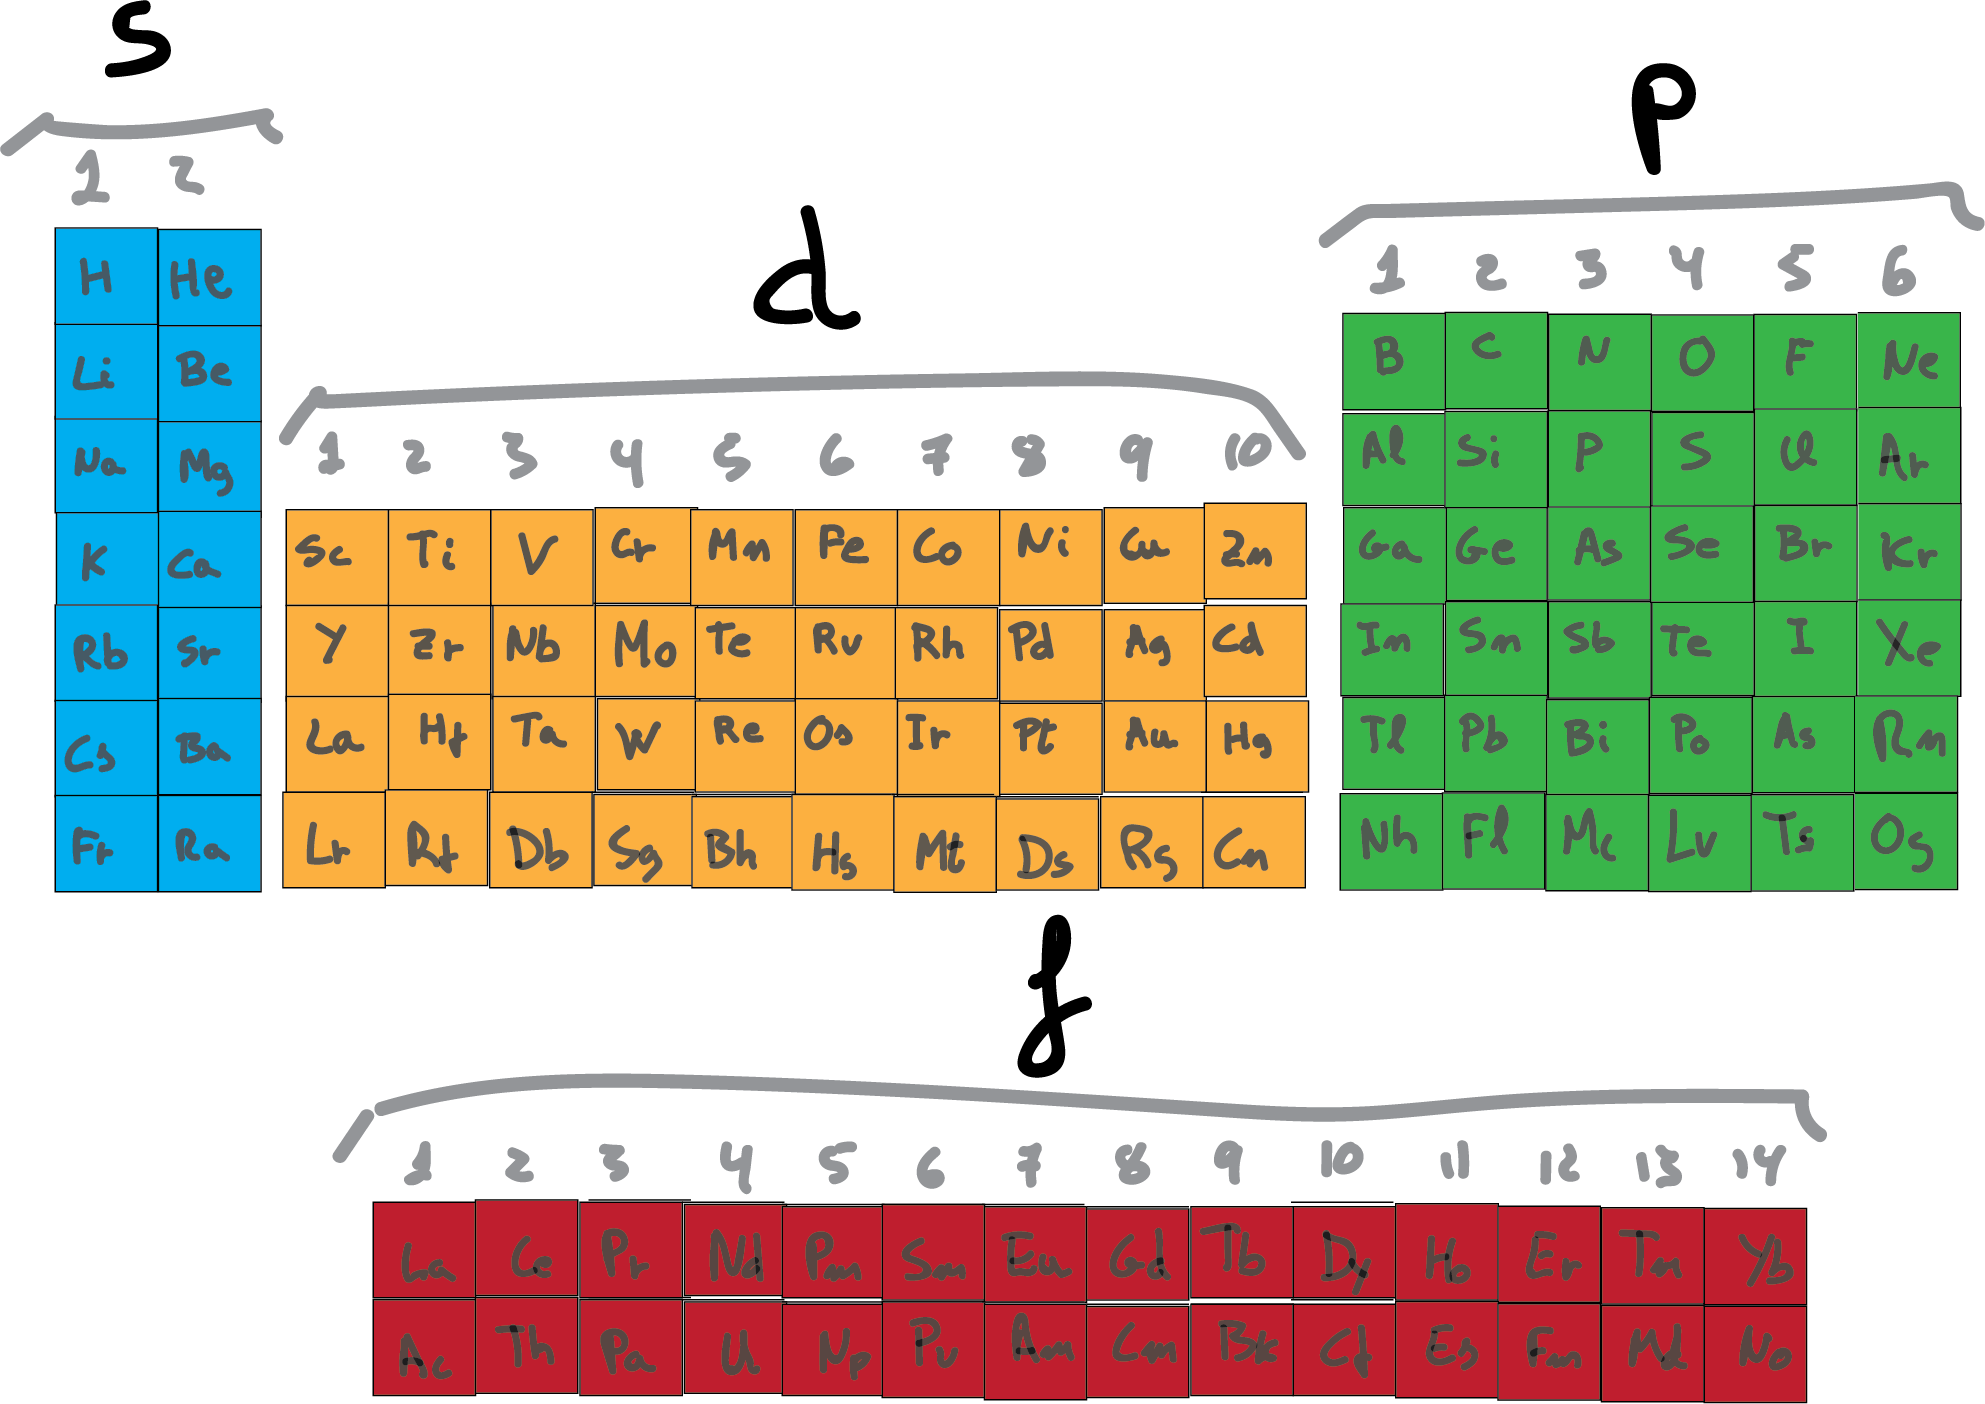 configuracion electronica table periodica orbitals s p d f